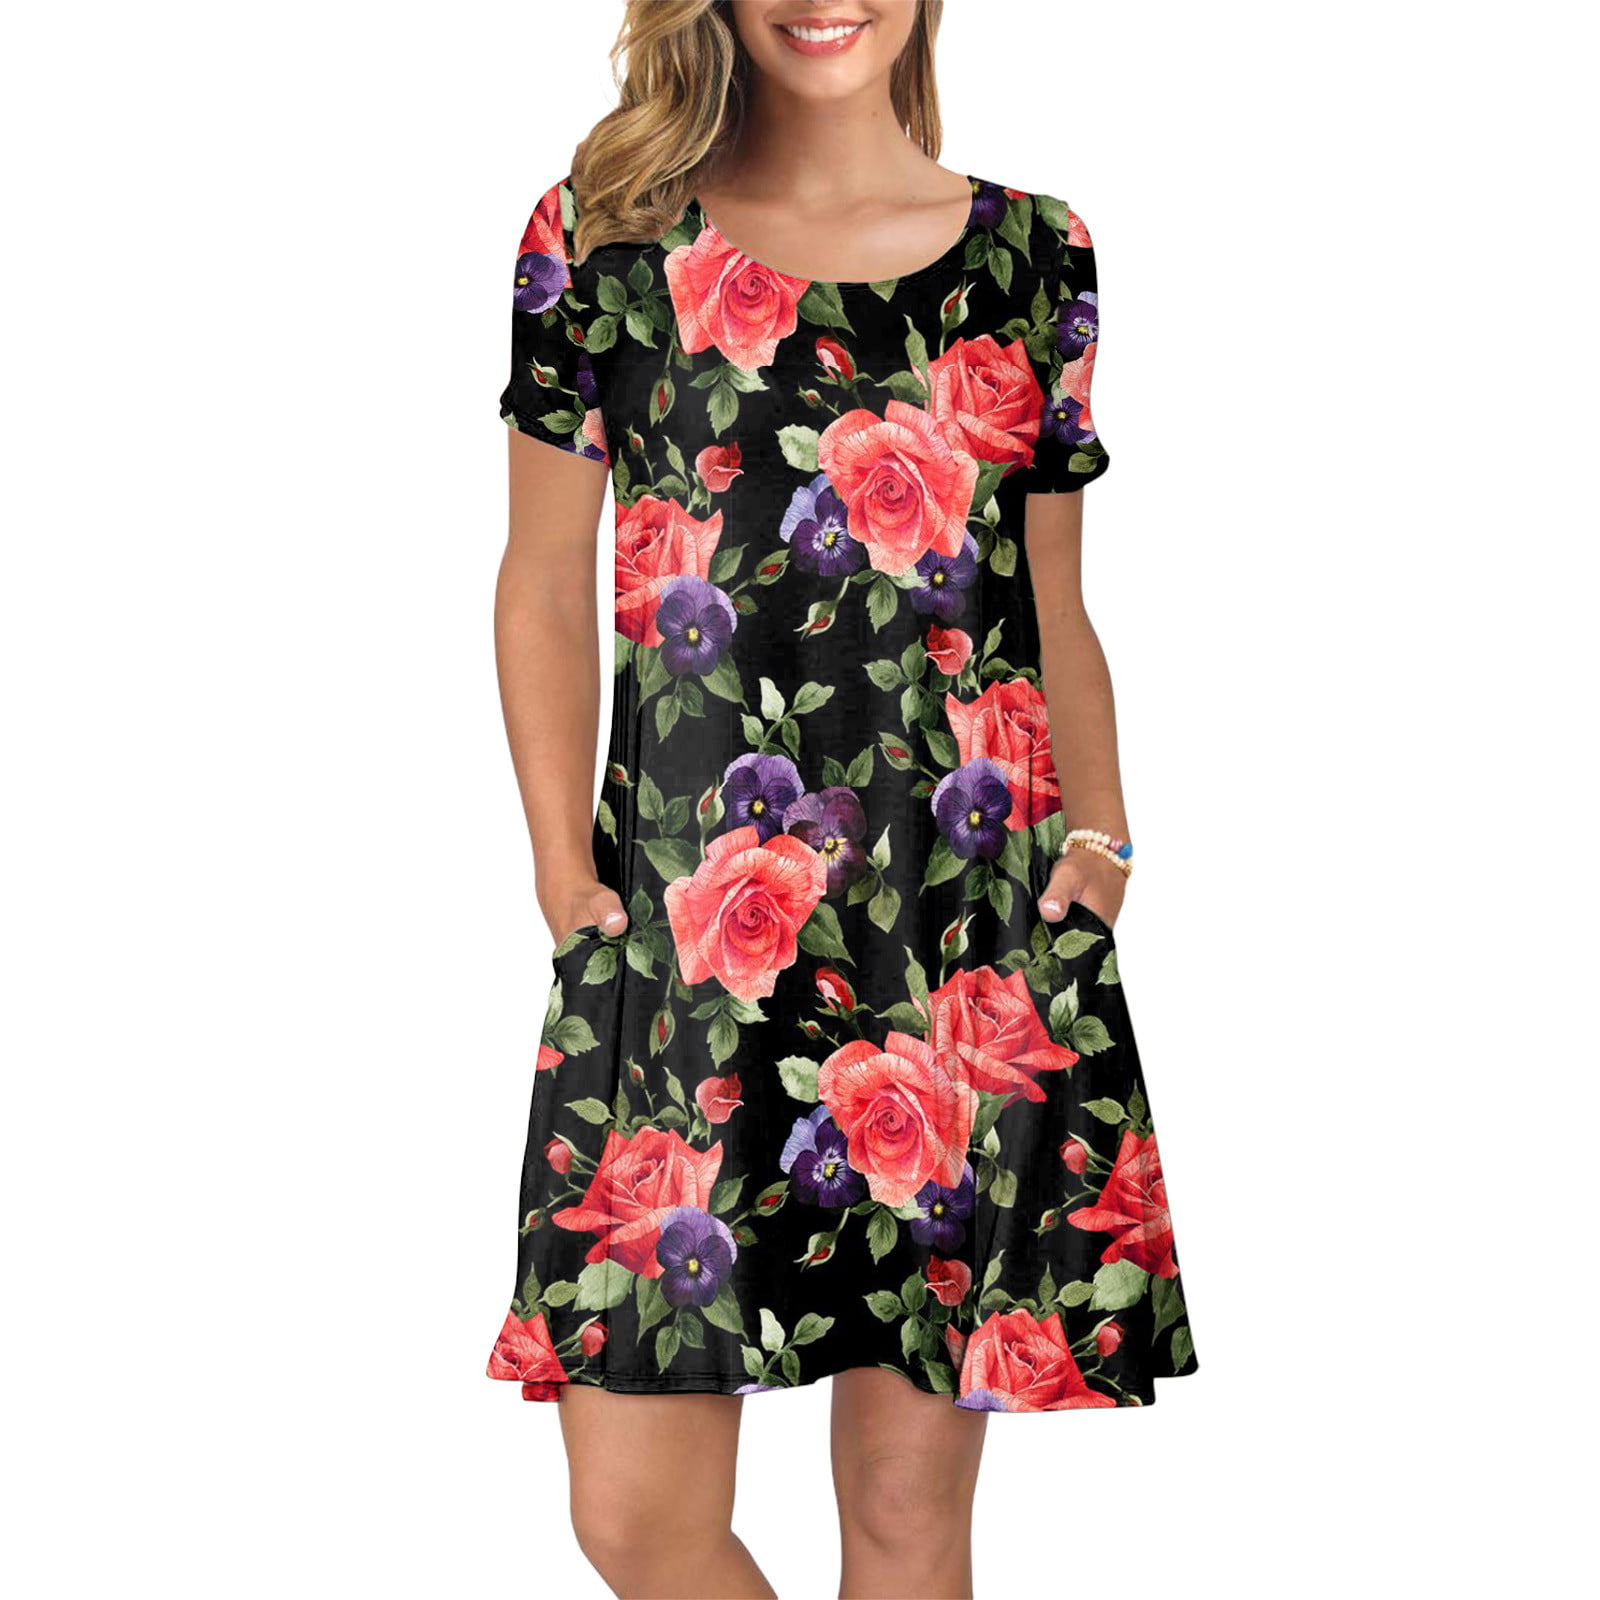 Women's Summer Casual T Shirt Dresses Short Sleeve Swing Dress Pockets -  Walmart.com